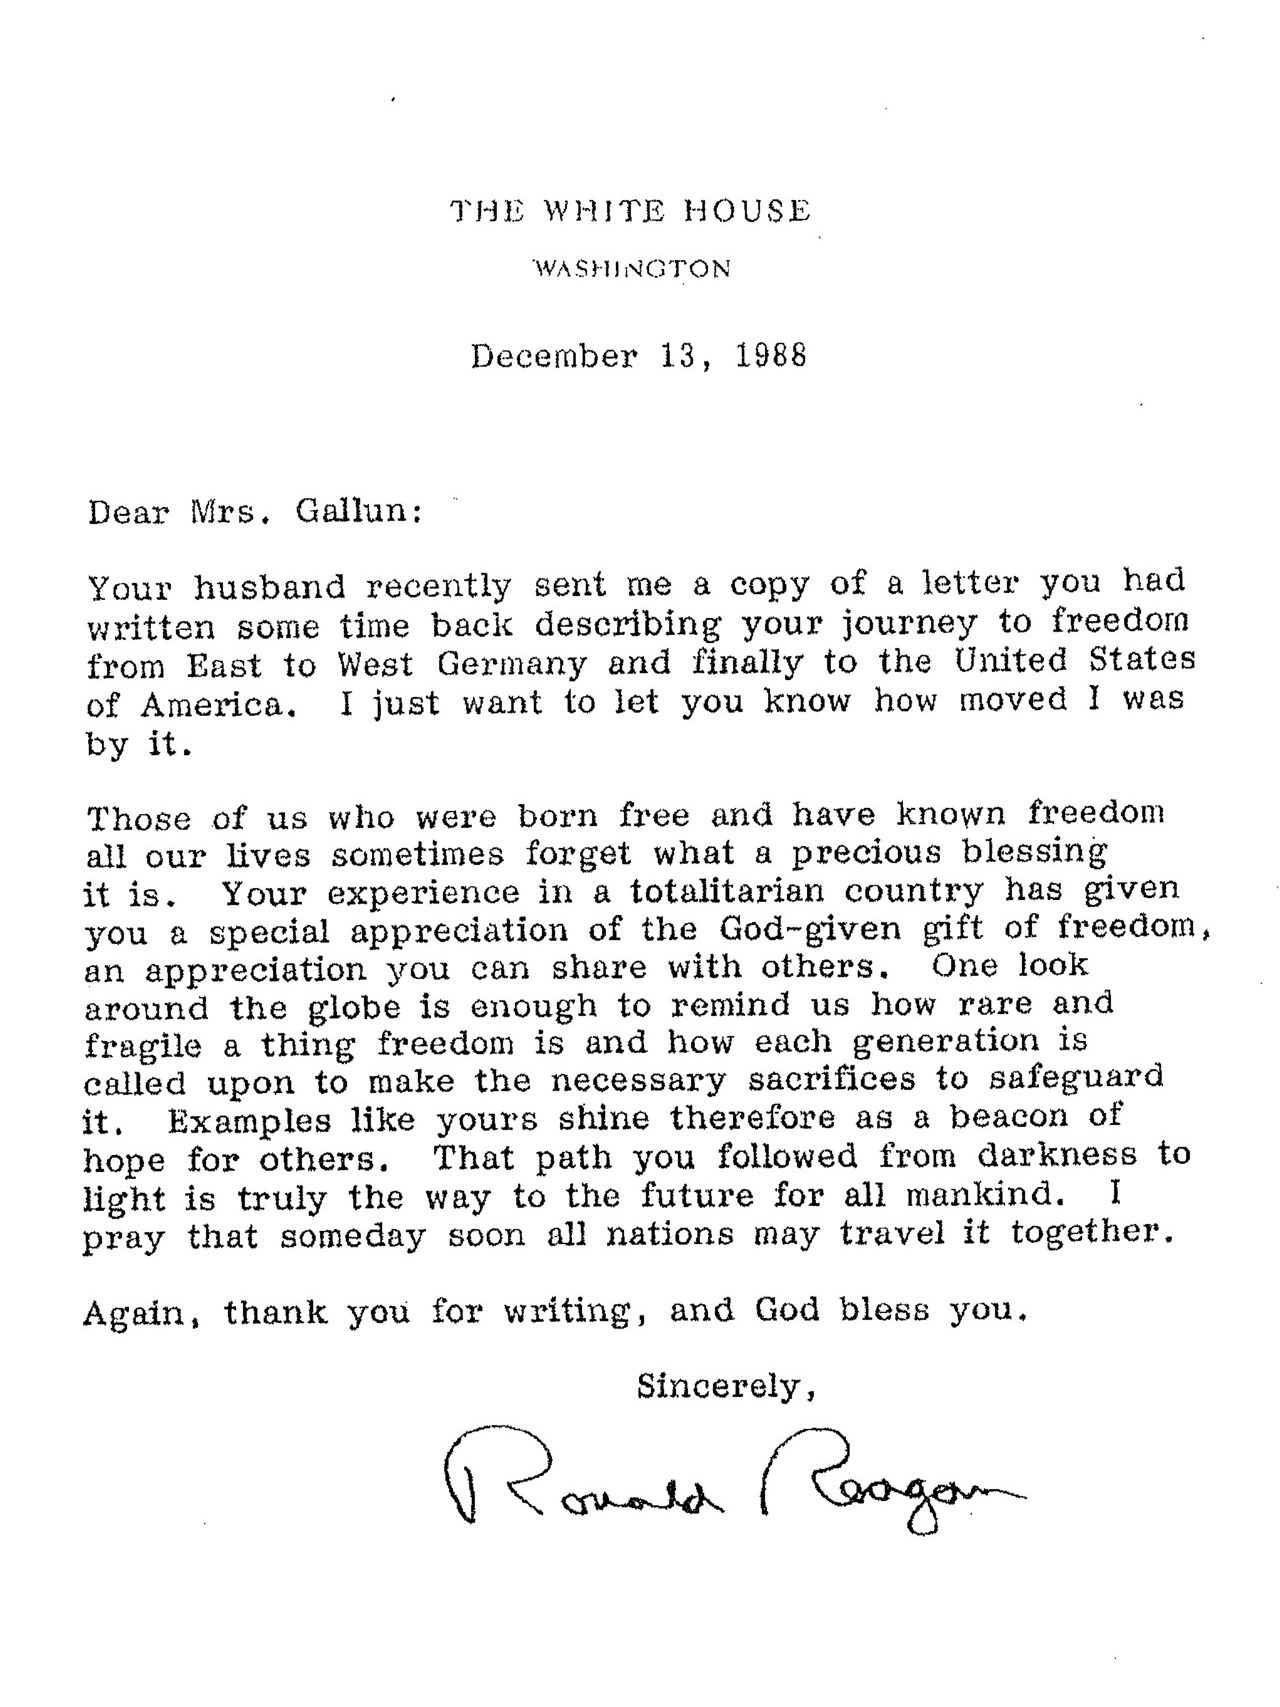 Gallun-fellowship-Reagan-letter